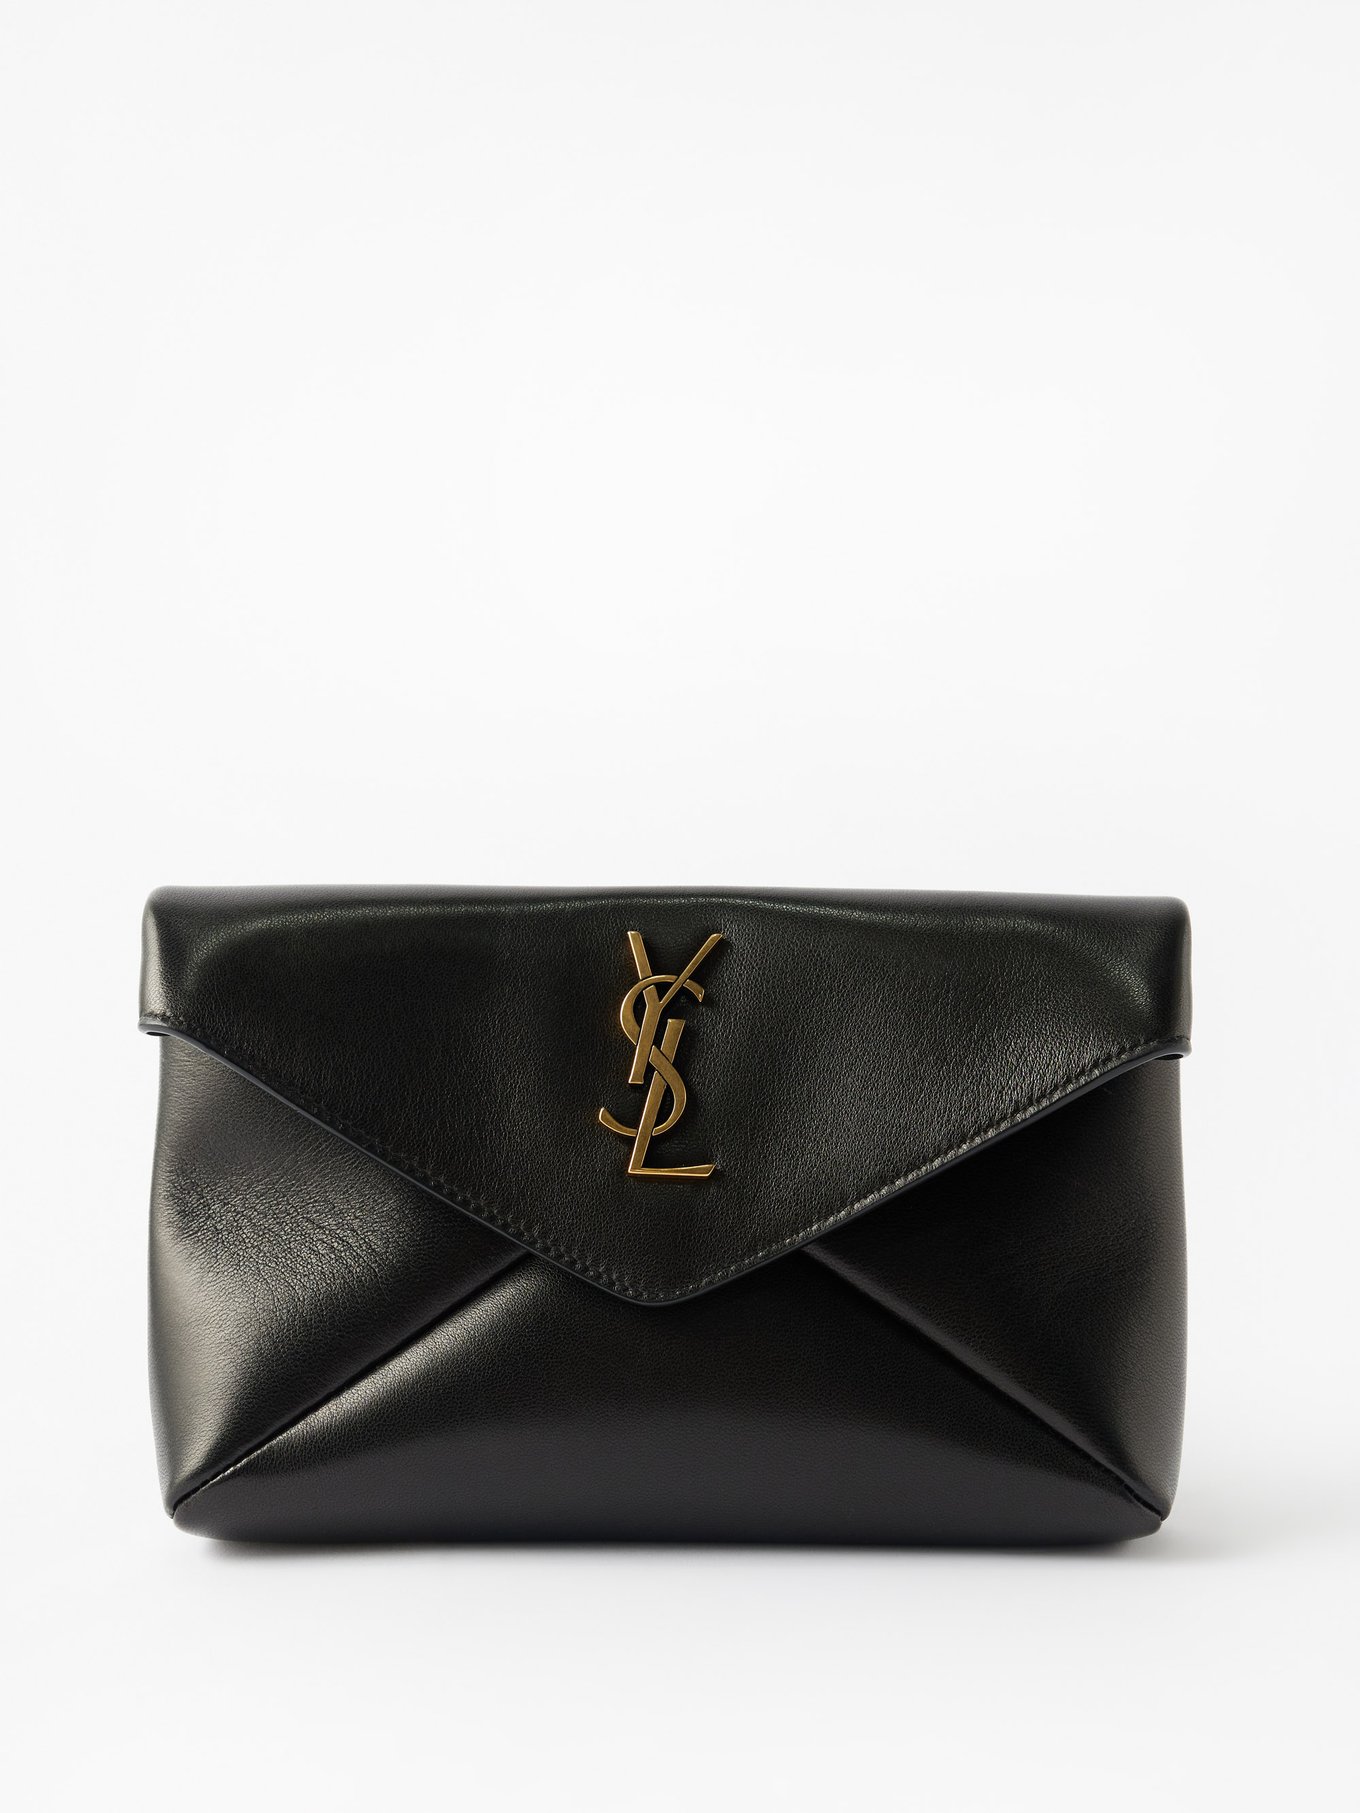 Saint Laurent Uptown Ysl-plaque Patent-leather Clutch Bag